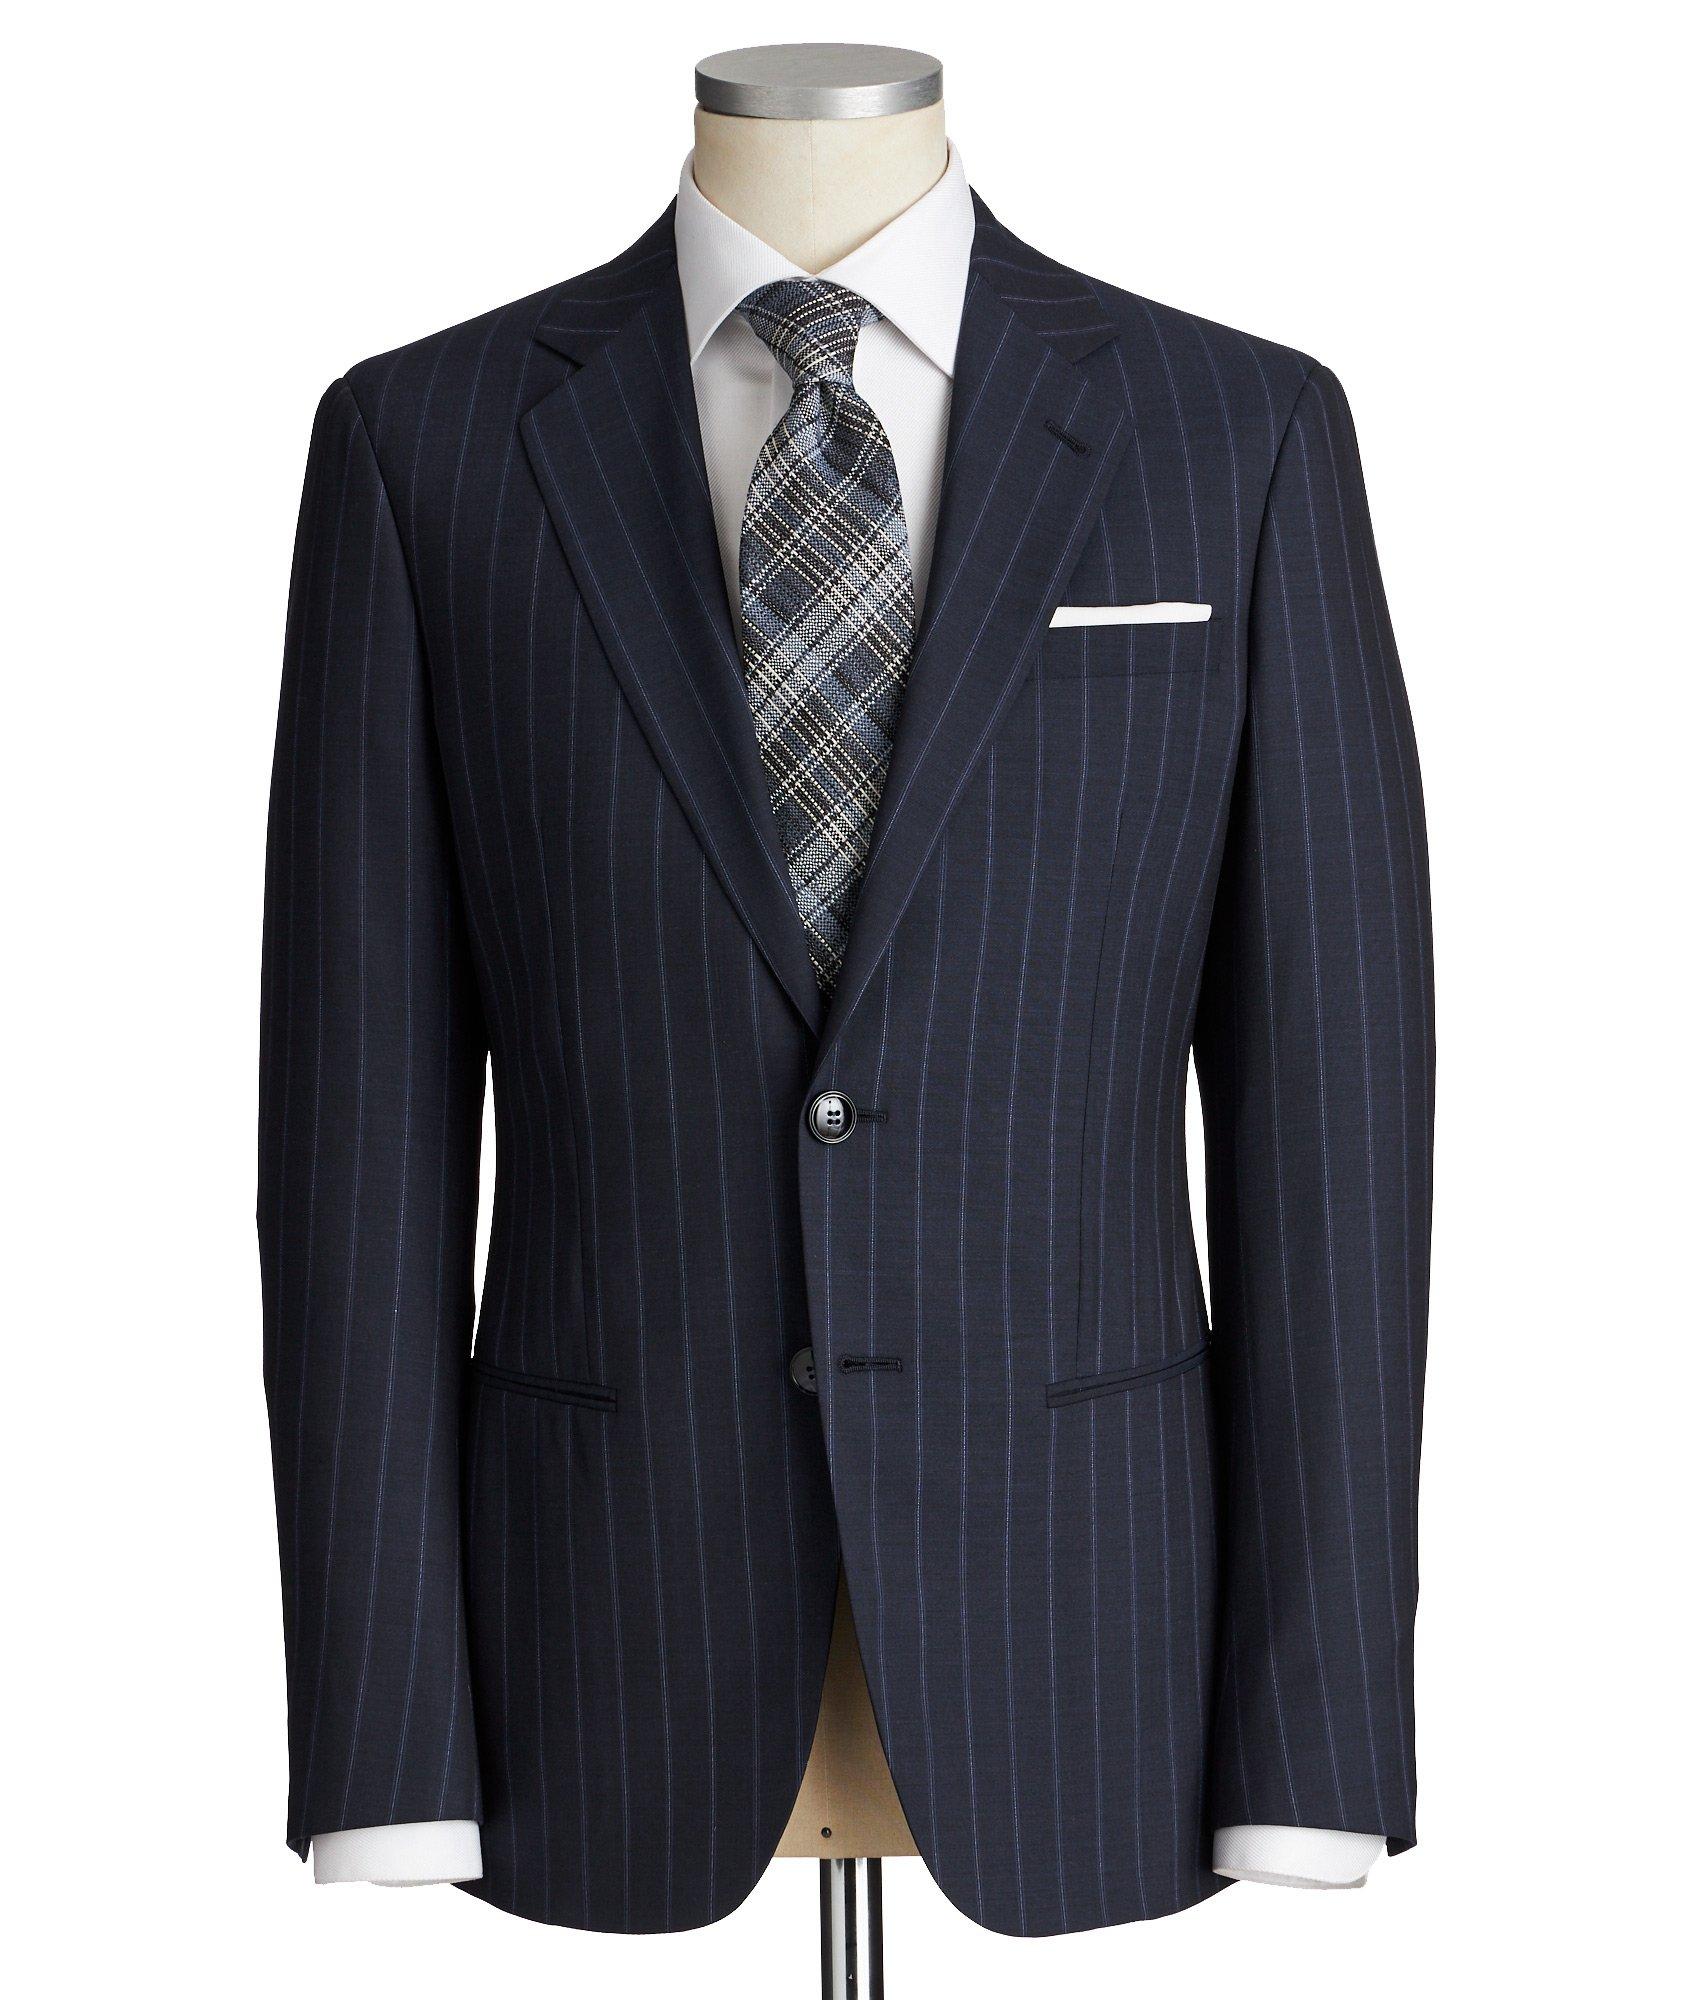 Soho Striped Suit image 0